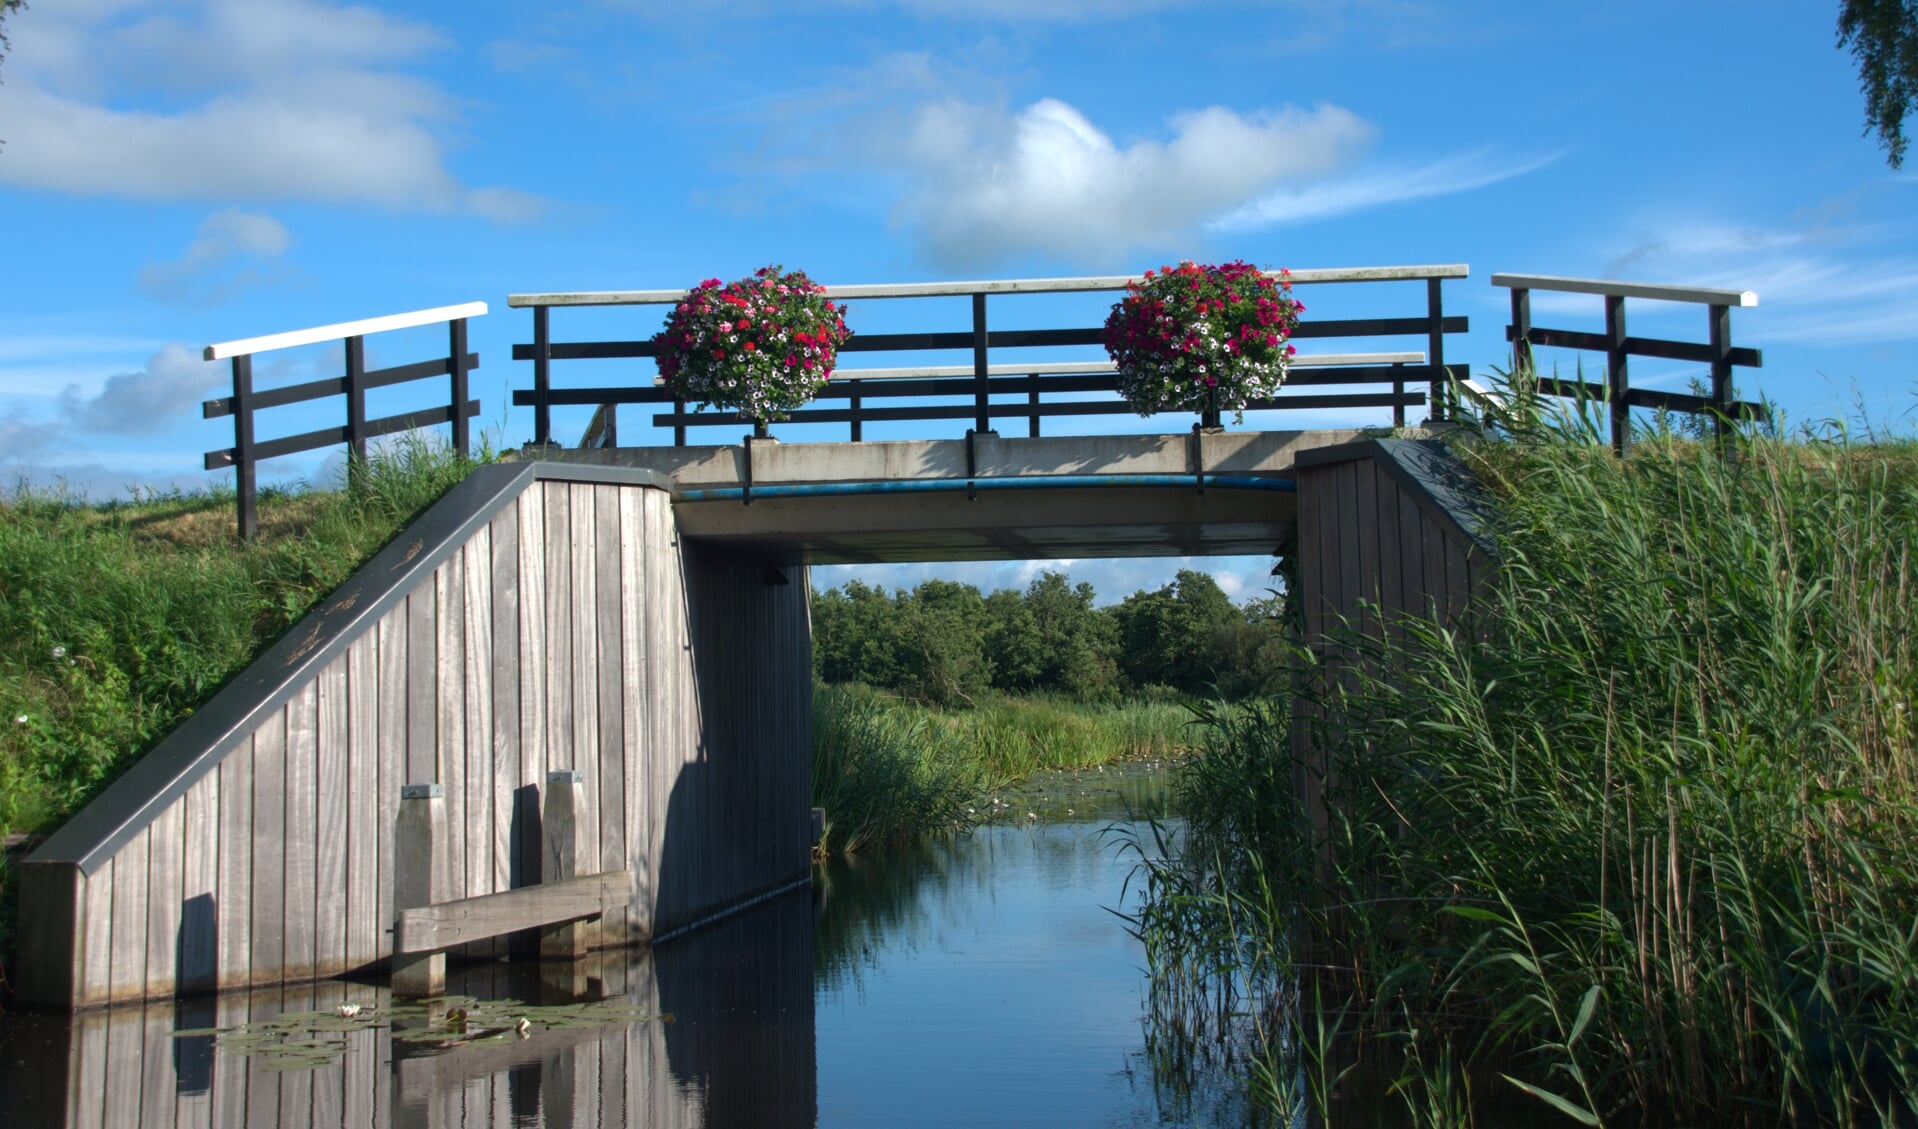 Eén van de bloemenbruggen in Belt-Schutsloot.